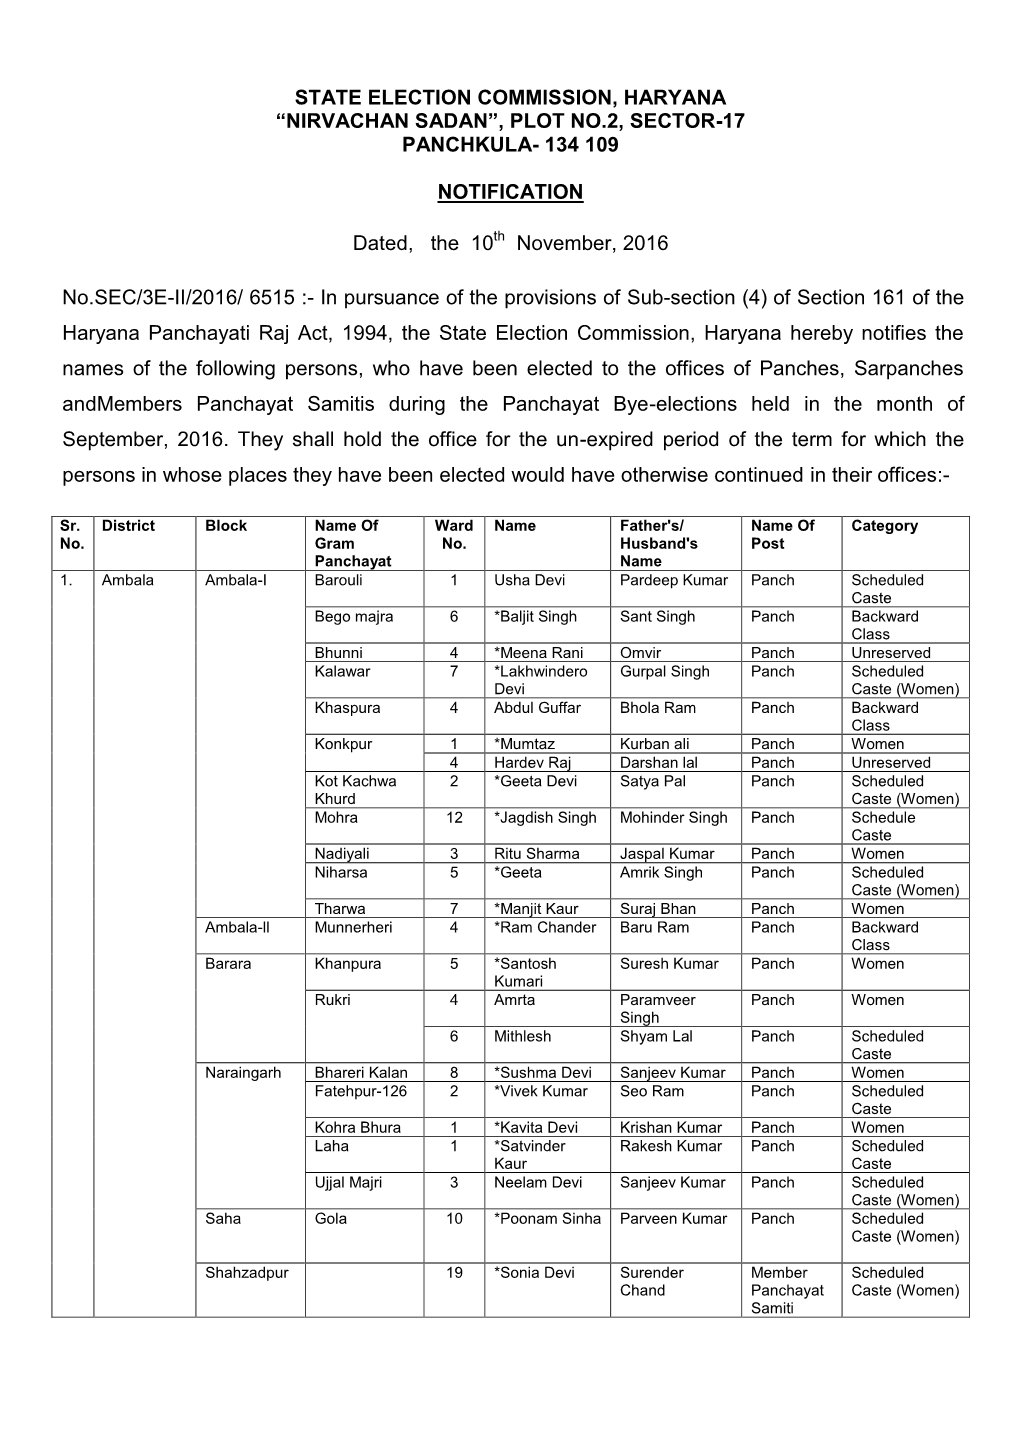 State Election Commission, Haryana “Nirvachan Sadan”, Plot No.2, Sector-17 Panchkula- 134 109